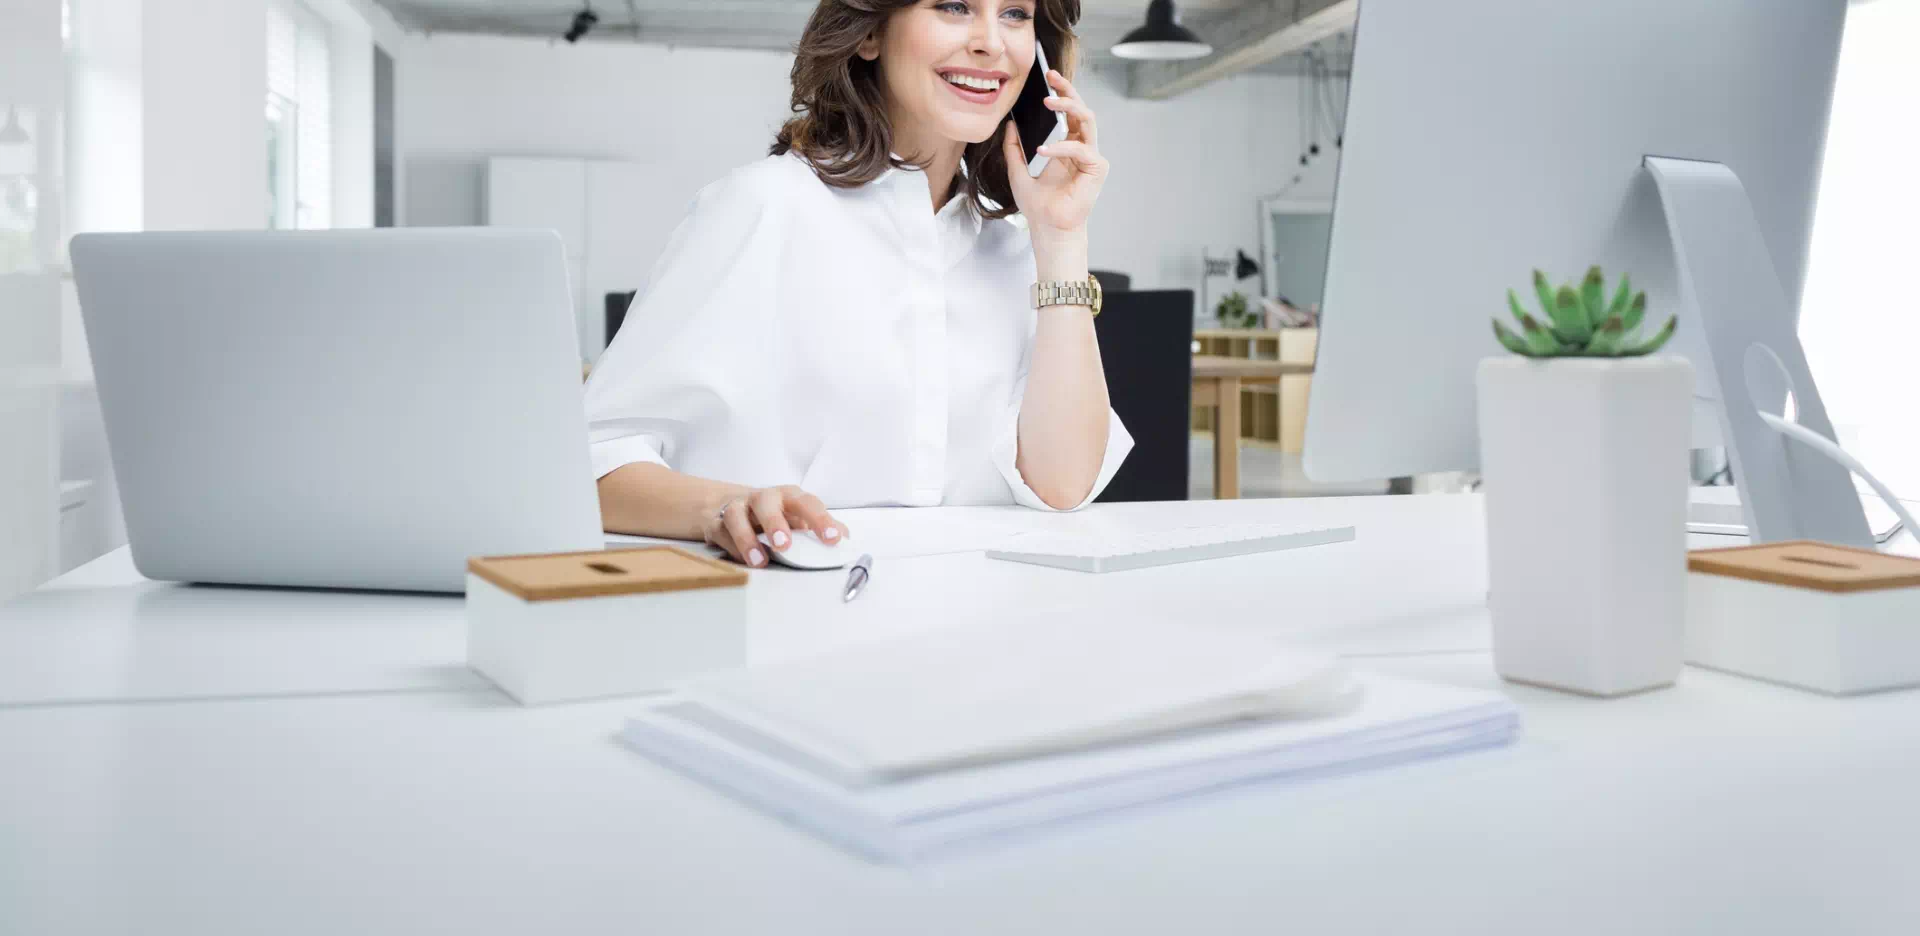 Kobieta ubrana w białą koszulę pracująca w biurze